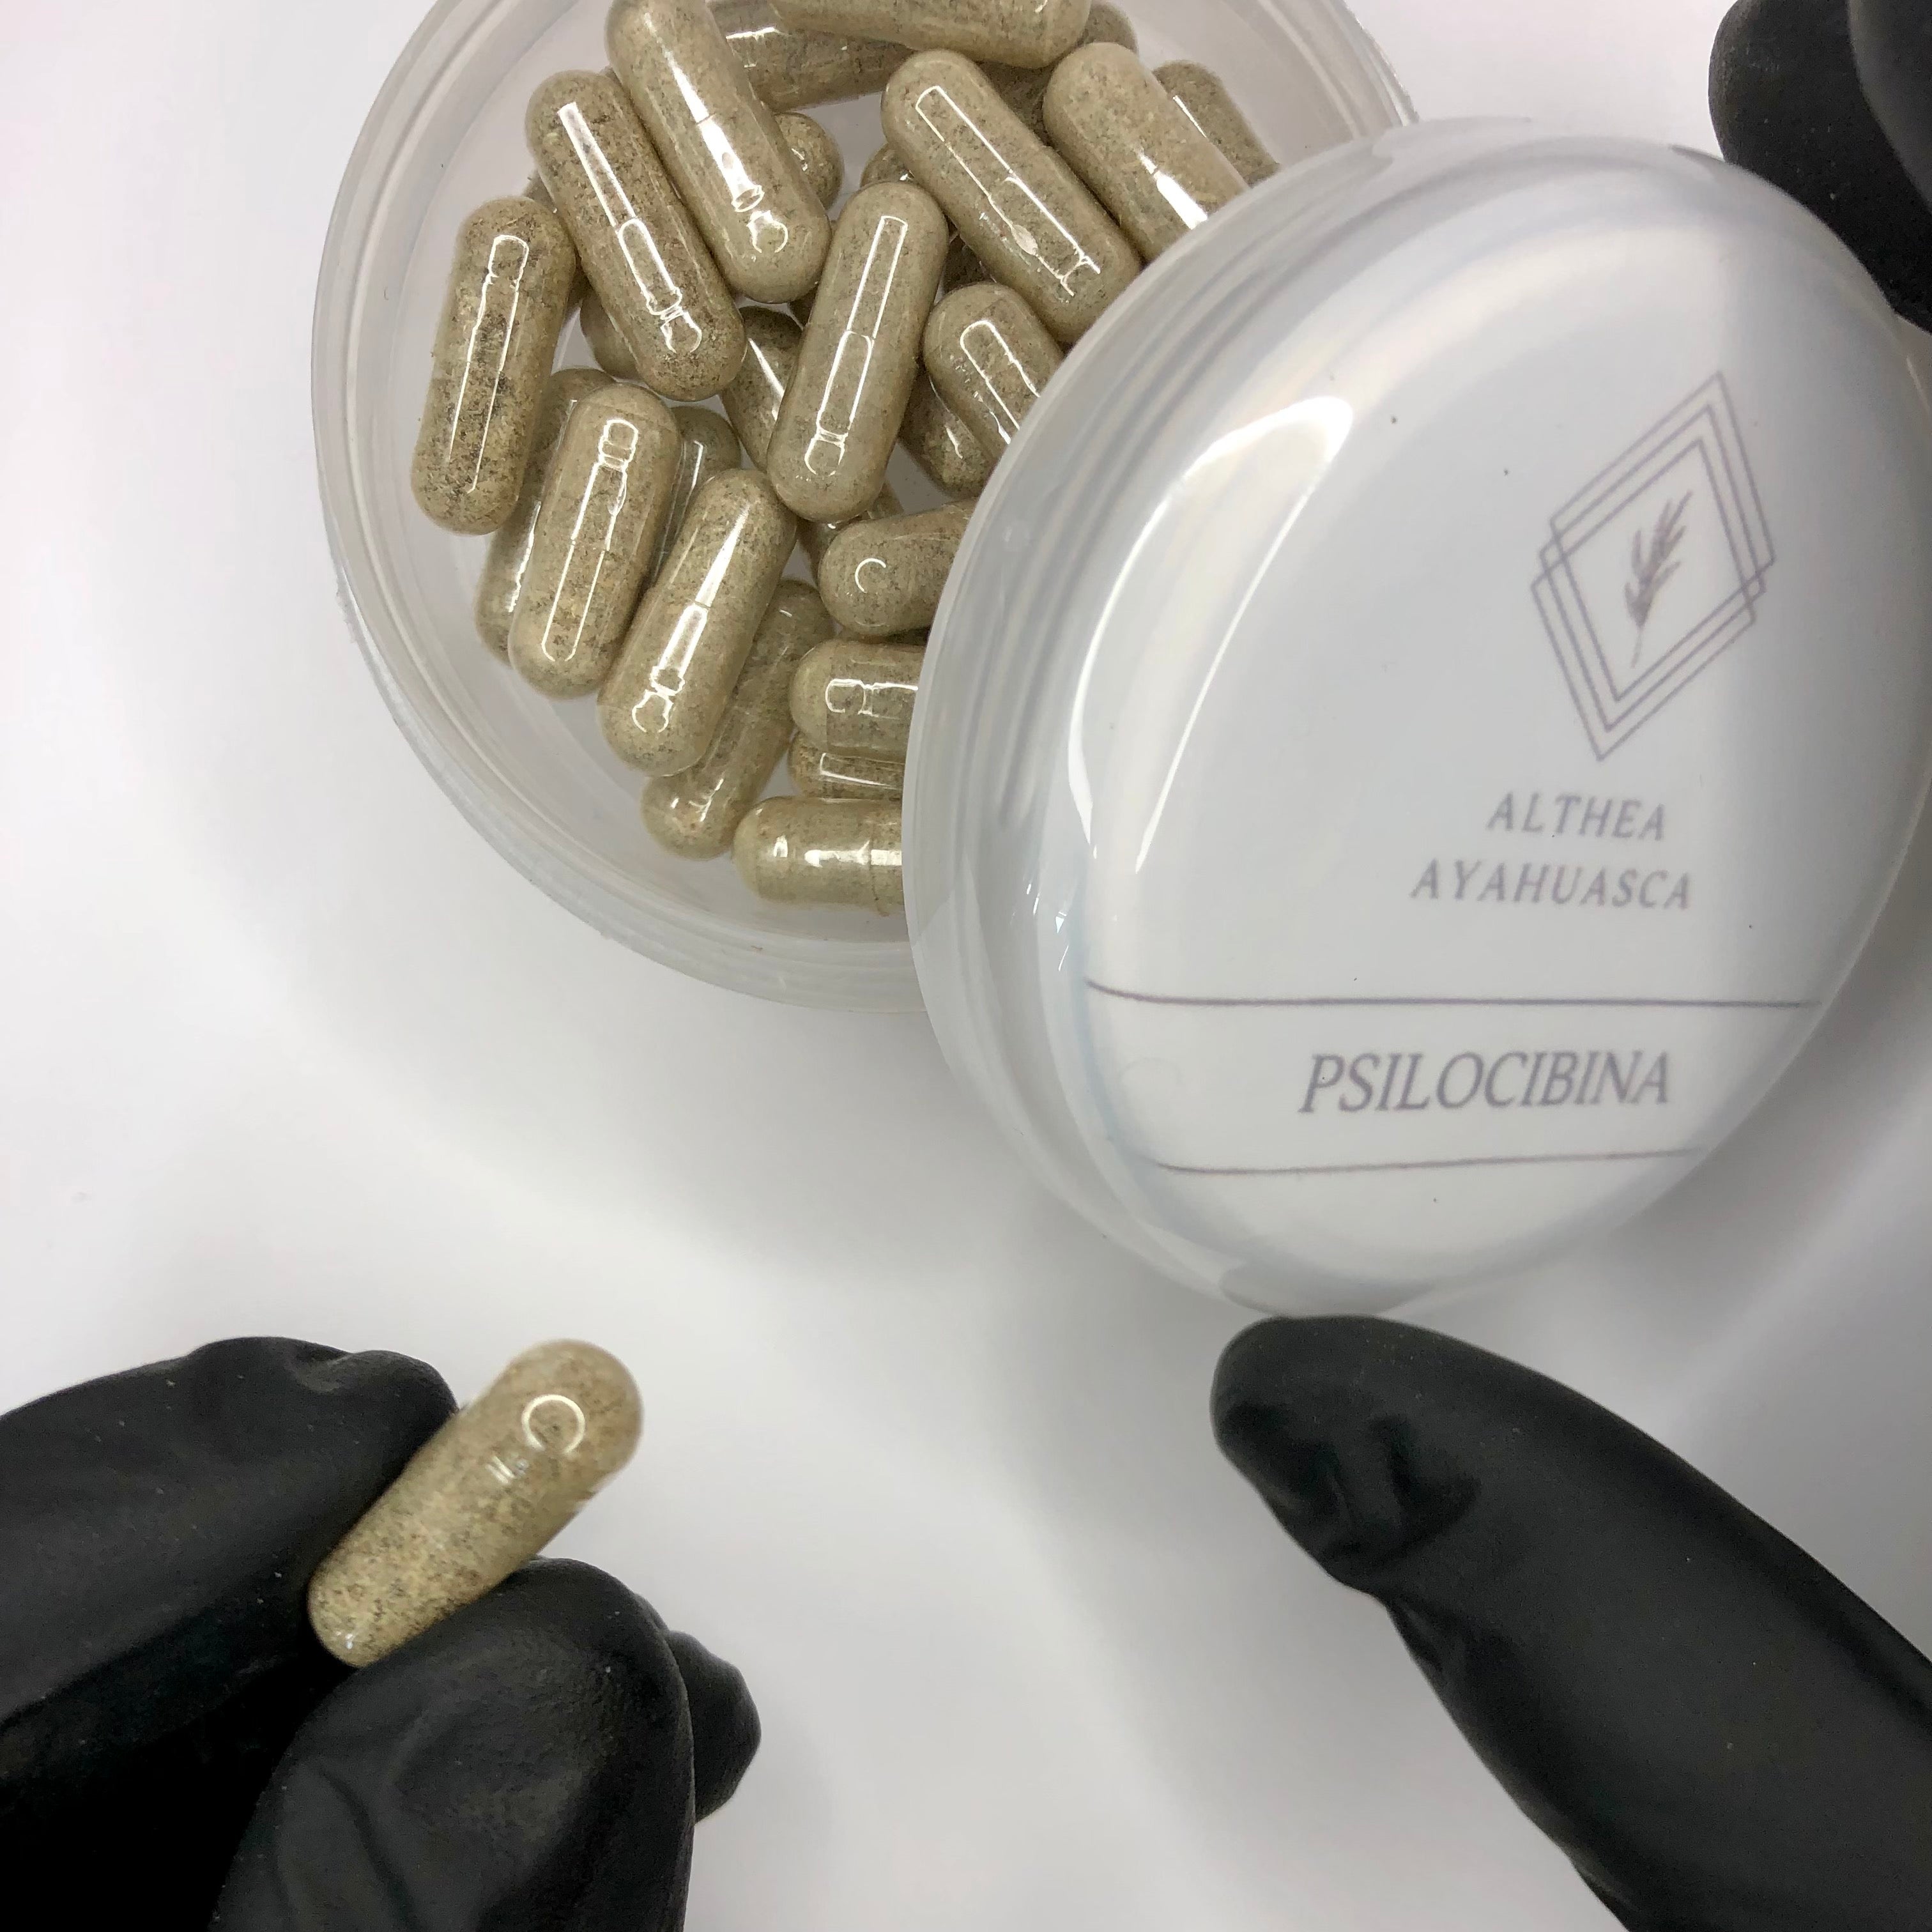 Microdosis de Psilocibina - Tratamiento para ansiedad, depresión y adicciones (30 días).